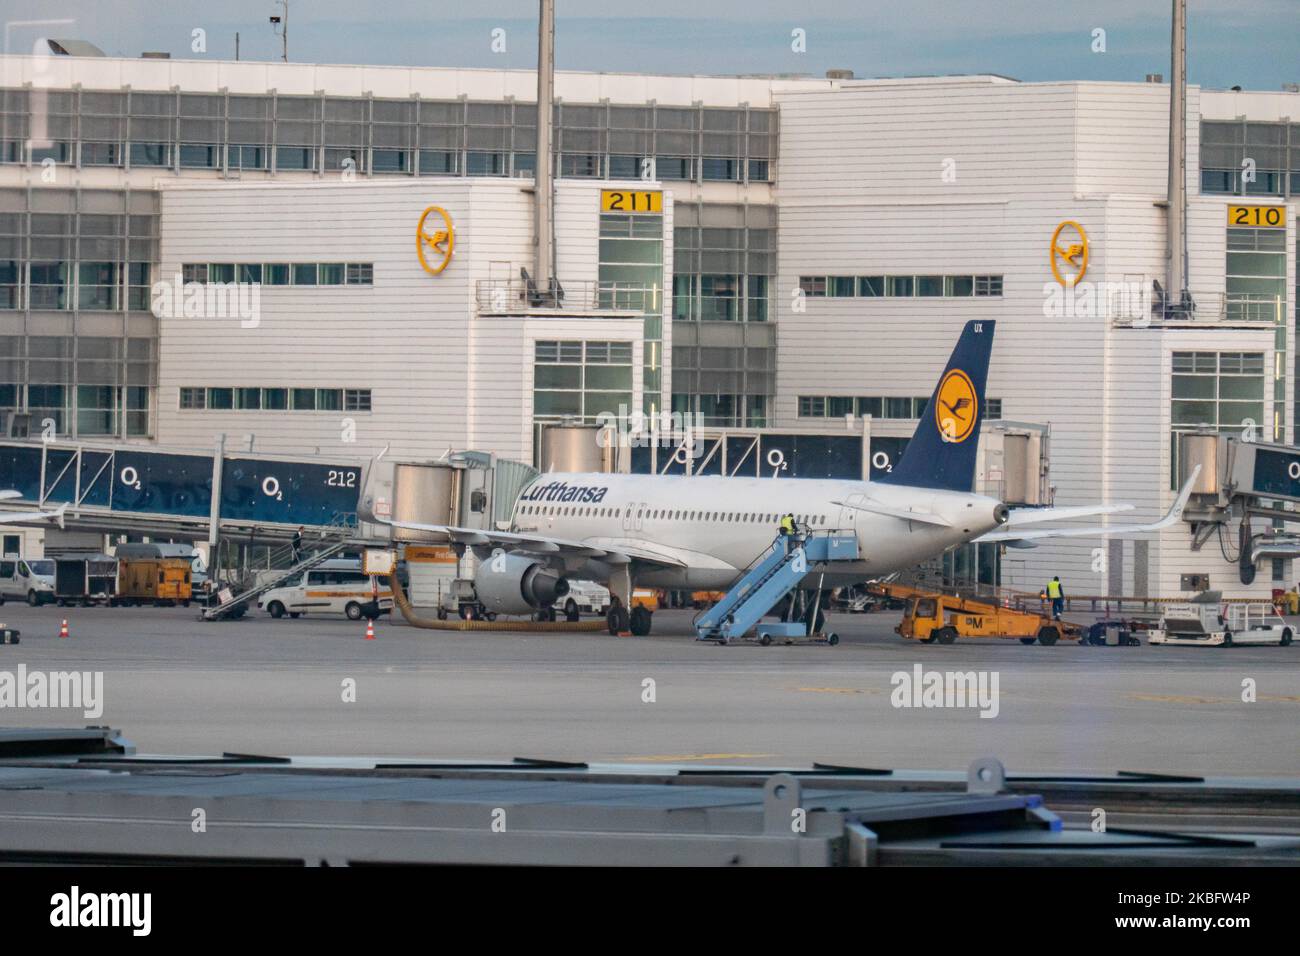 Un Airbus A320 di Lufthansa, visto ancorato al cancello 212 dell'aeroporto di Monaco. Traffico aereo di prima mattina movimento degli aerei Lufthansa con il loro logo visibile sul tarmac e attraccato tramite ponte sospeso o ponte aereo presso il terminal presso l'aeroporto internazionale MUC EDDM di Monaco in Baviera, Germania, Flughafen München in tedesco. Deutsche Lufthansa DHL LH è la compagnia aerea principale e di bandiera della Germania che utilizza Monaco come uno dei due hub. Lufthansa è membro dell'alleanza aerea Star Alliance. Gennaio 26, 2020 (Foto di Nicolas Economou/NurPhoto) Foto Stock